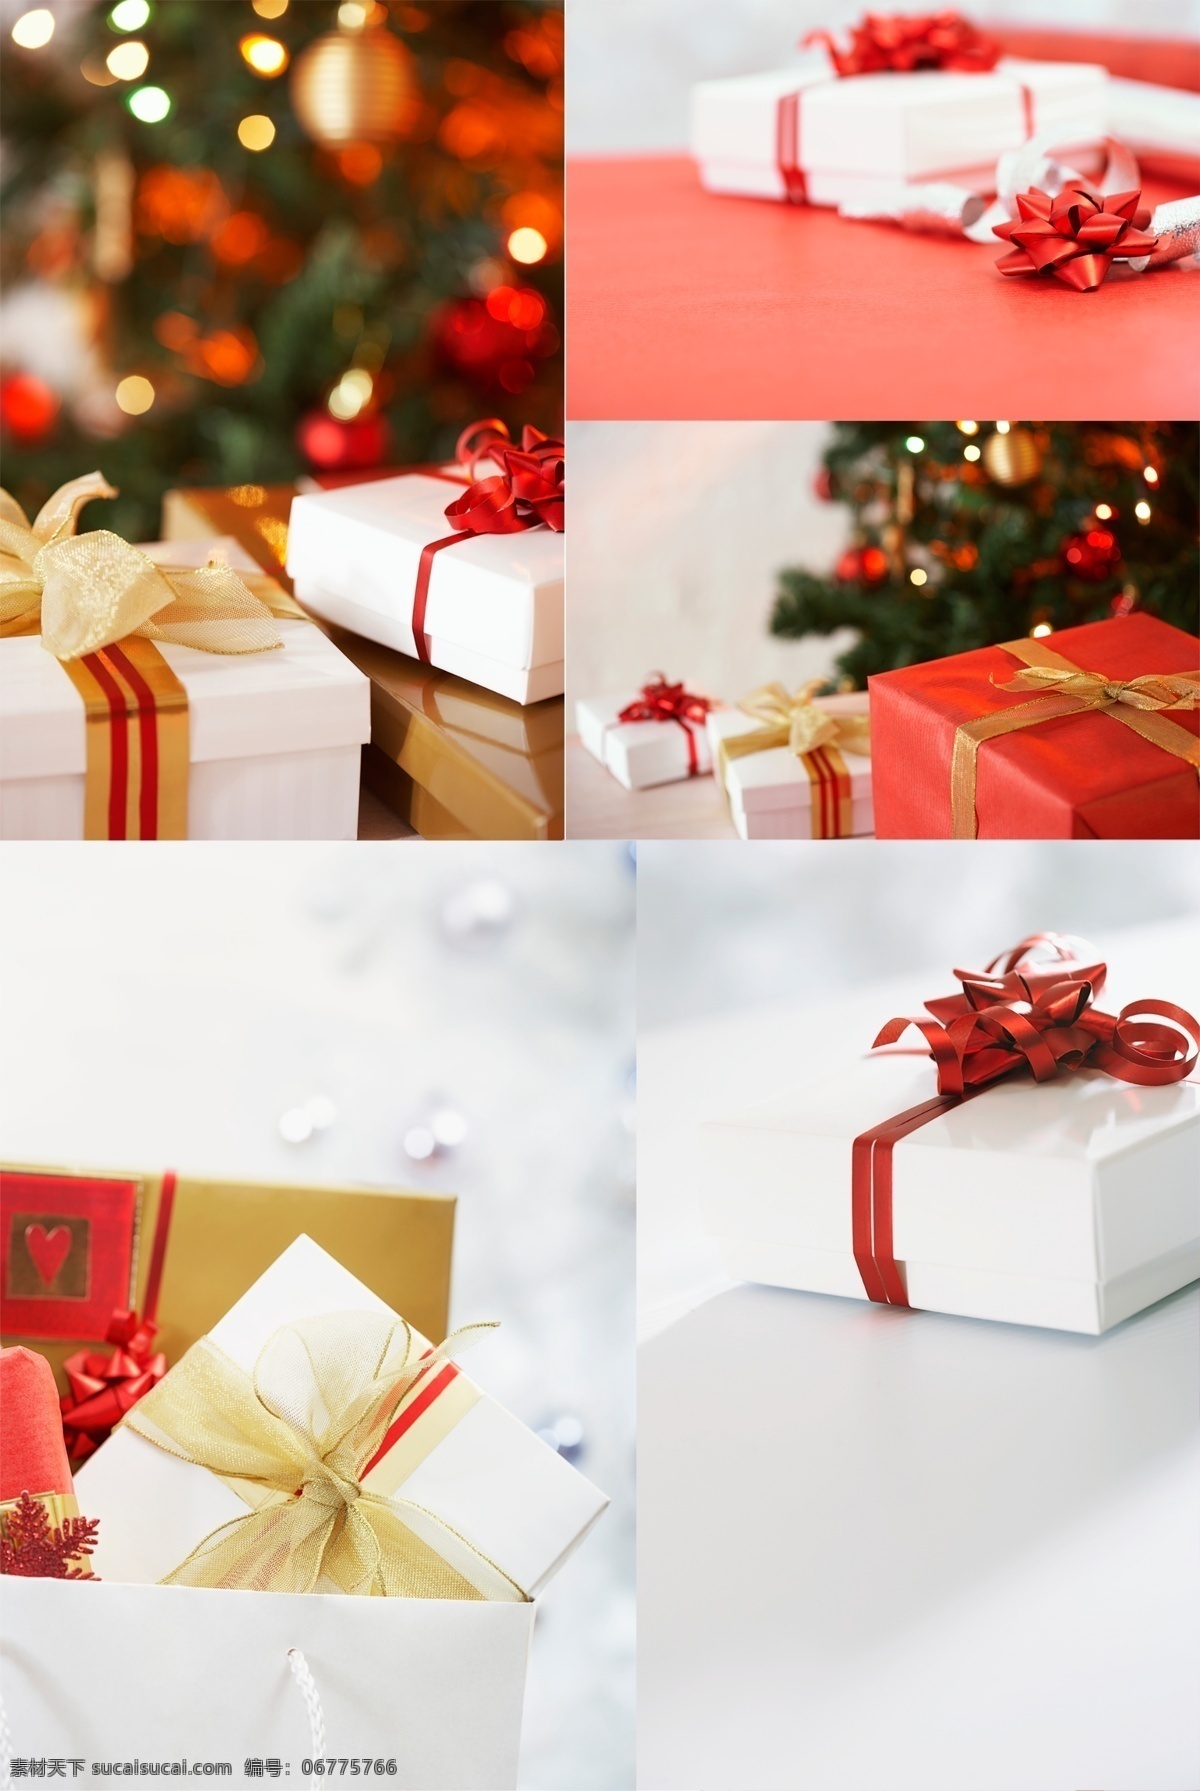 礼品盒 设计素材 集 高清背景图 霓虹灯 圣诞节礼品盒 红丝带包装盒 黄丝带包装盒 节日素材